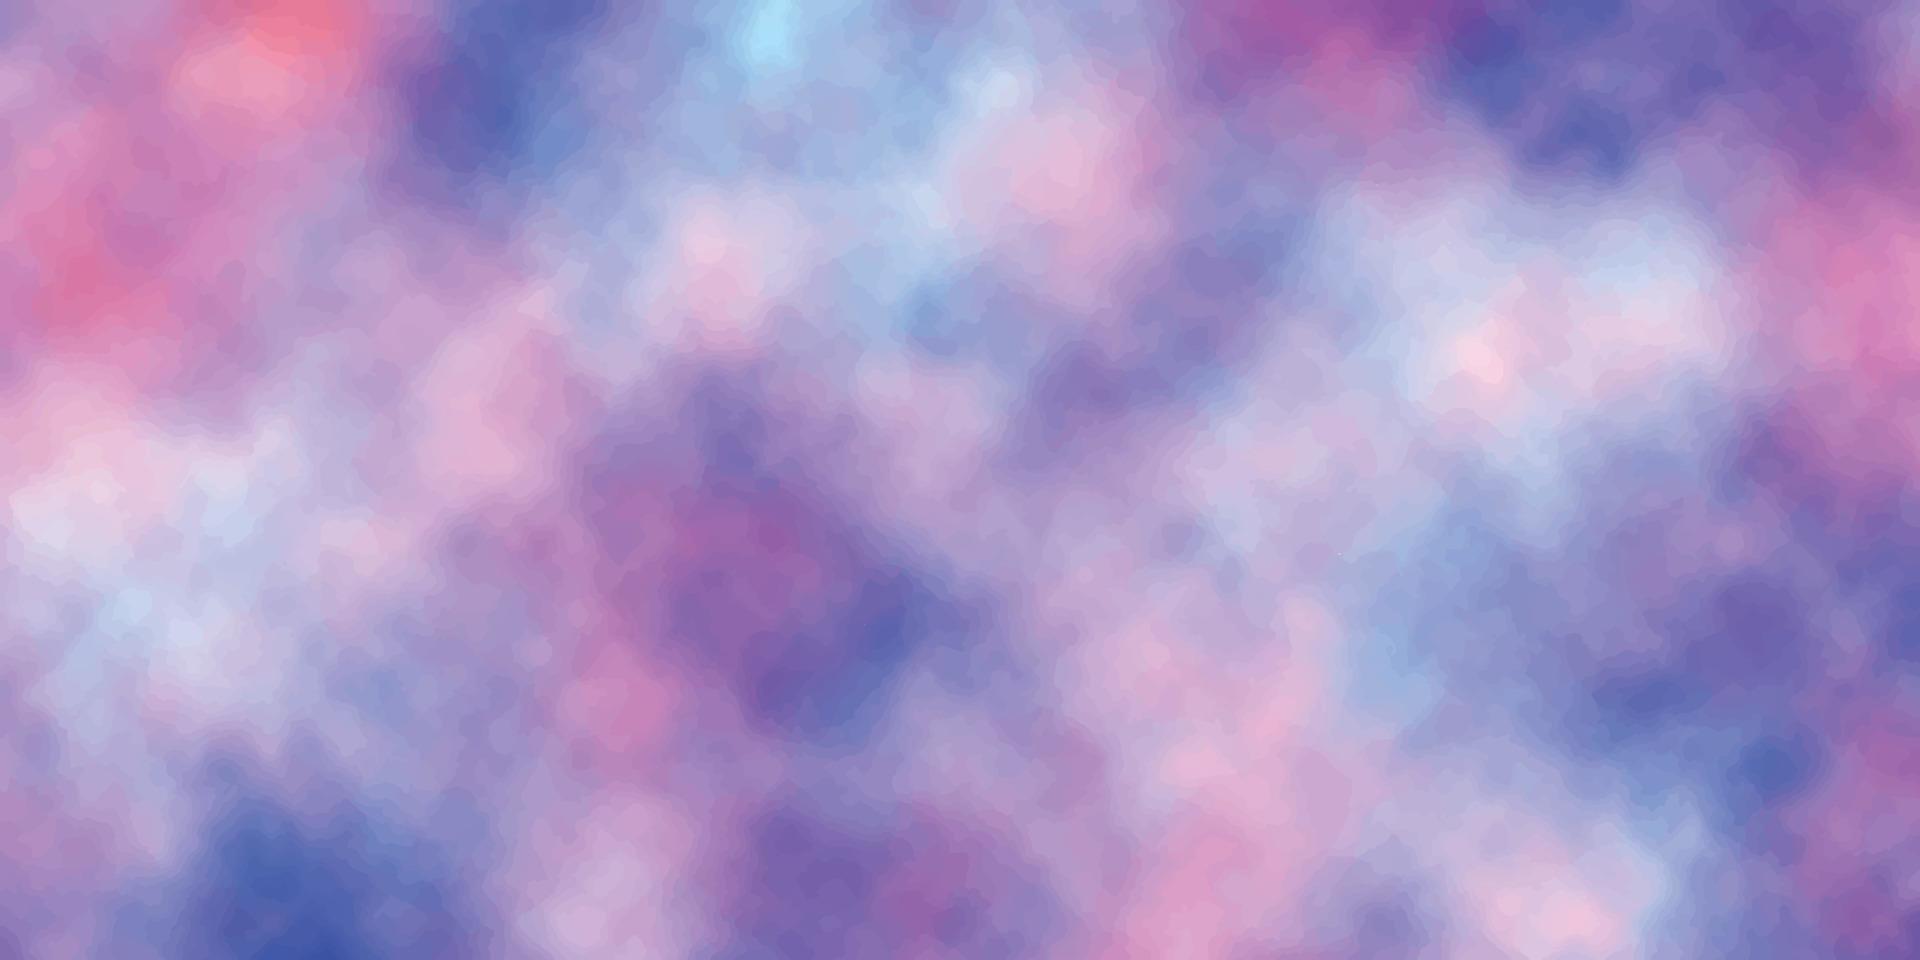 fondo de acuarela abstracto con formas espaciales y nubladas hermoso fondo de acuarela pintado a mano azul y rosa utilizado para negocios, empresas, instituciones, afiches, plantillas, vectores, ilustraciones vector